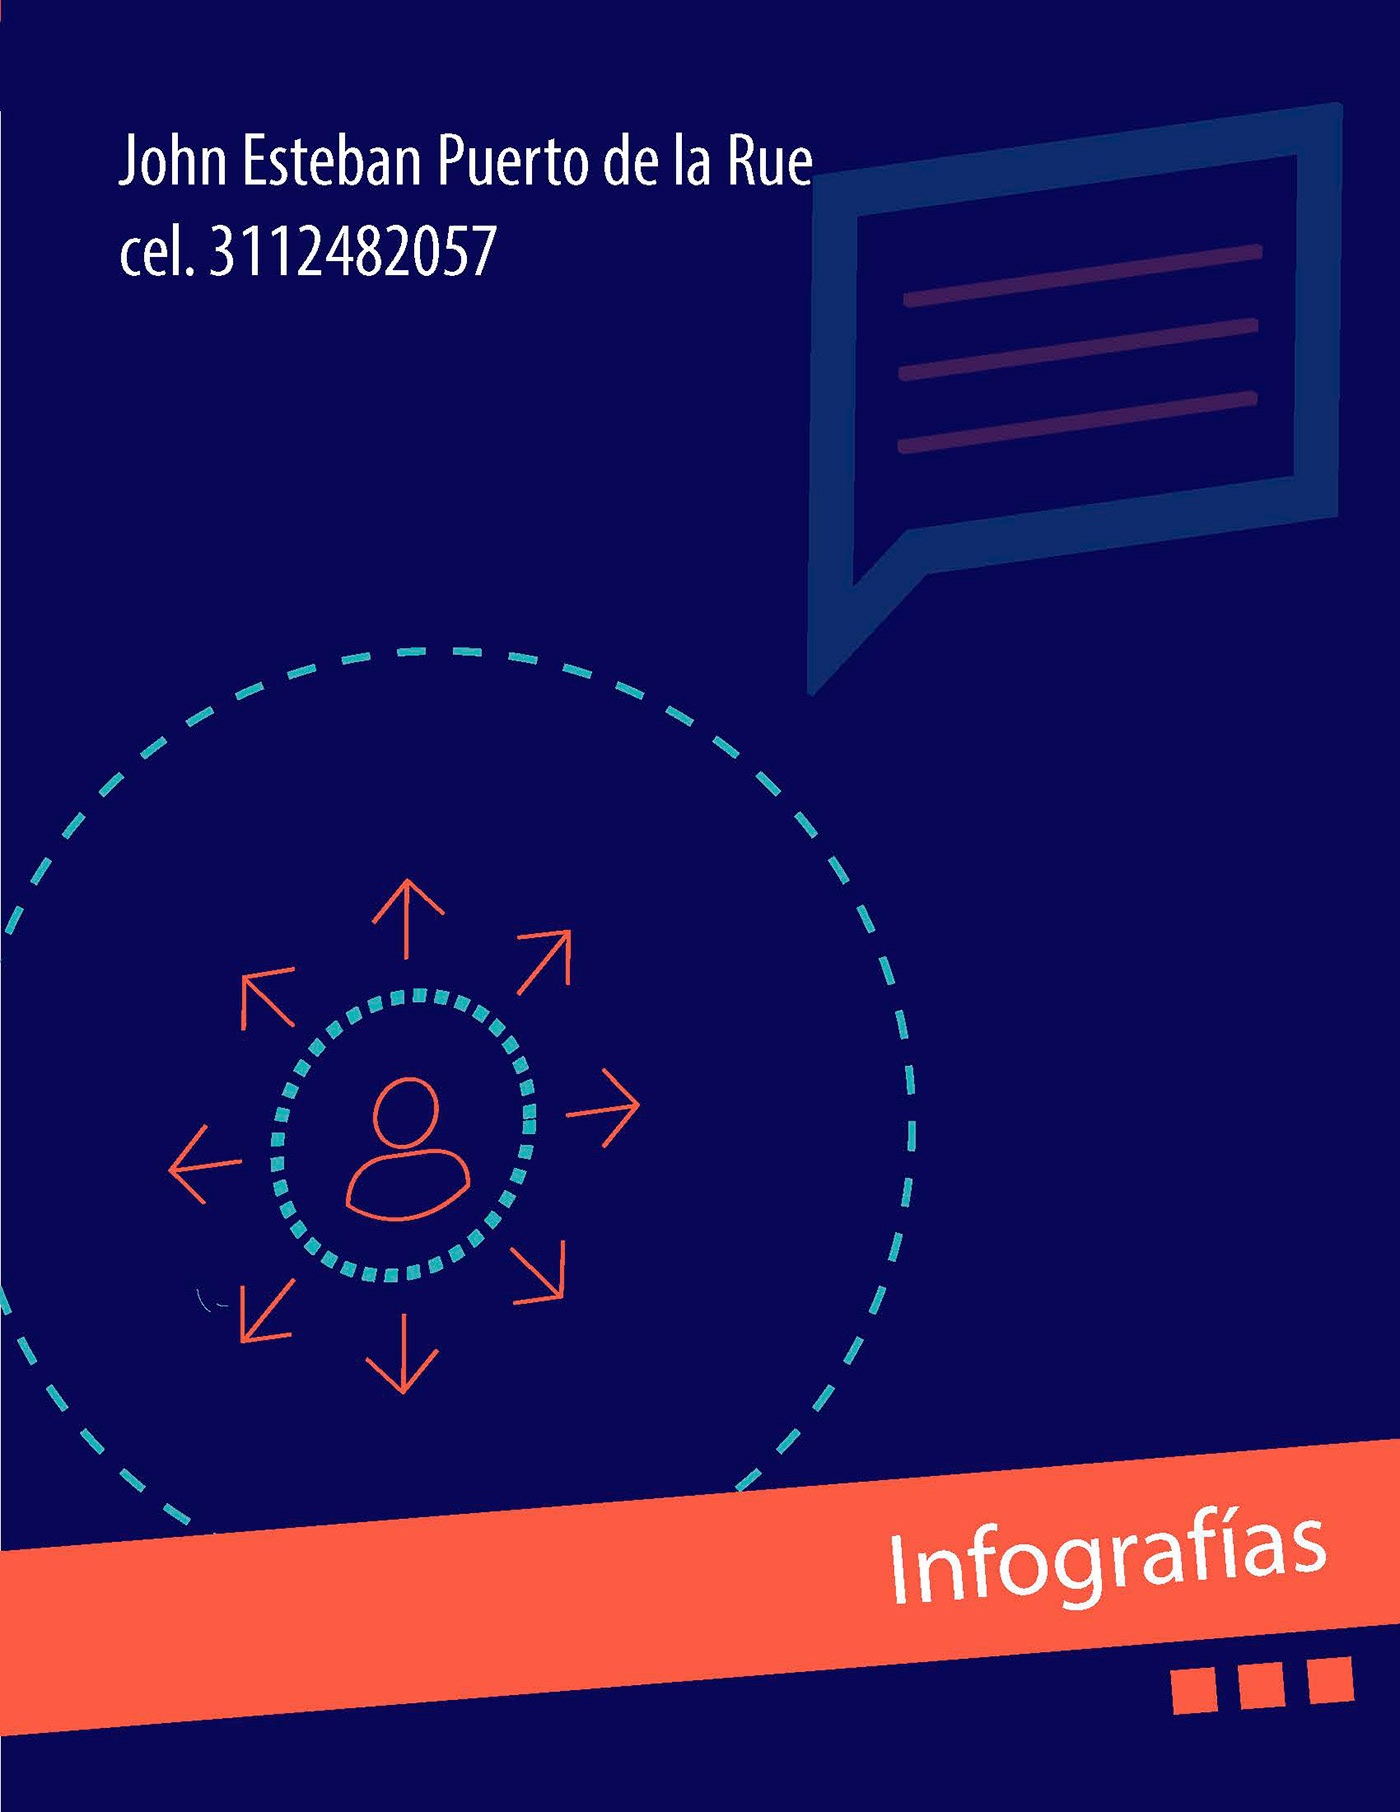 diseño gráfico Identidad Corporativa infografias logo editorial redes sociales